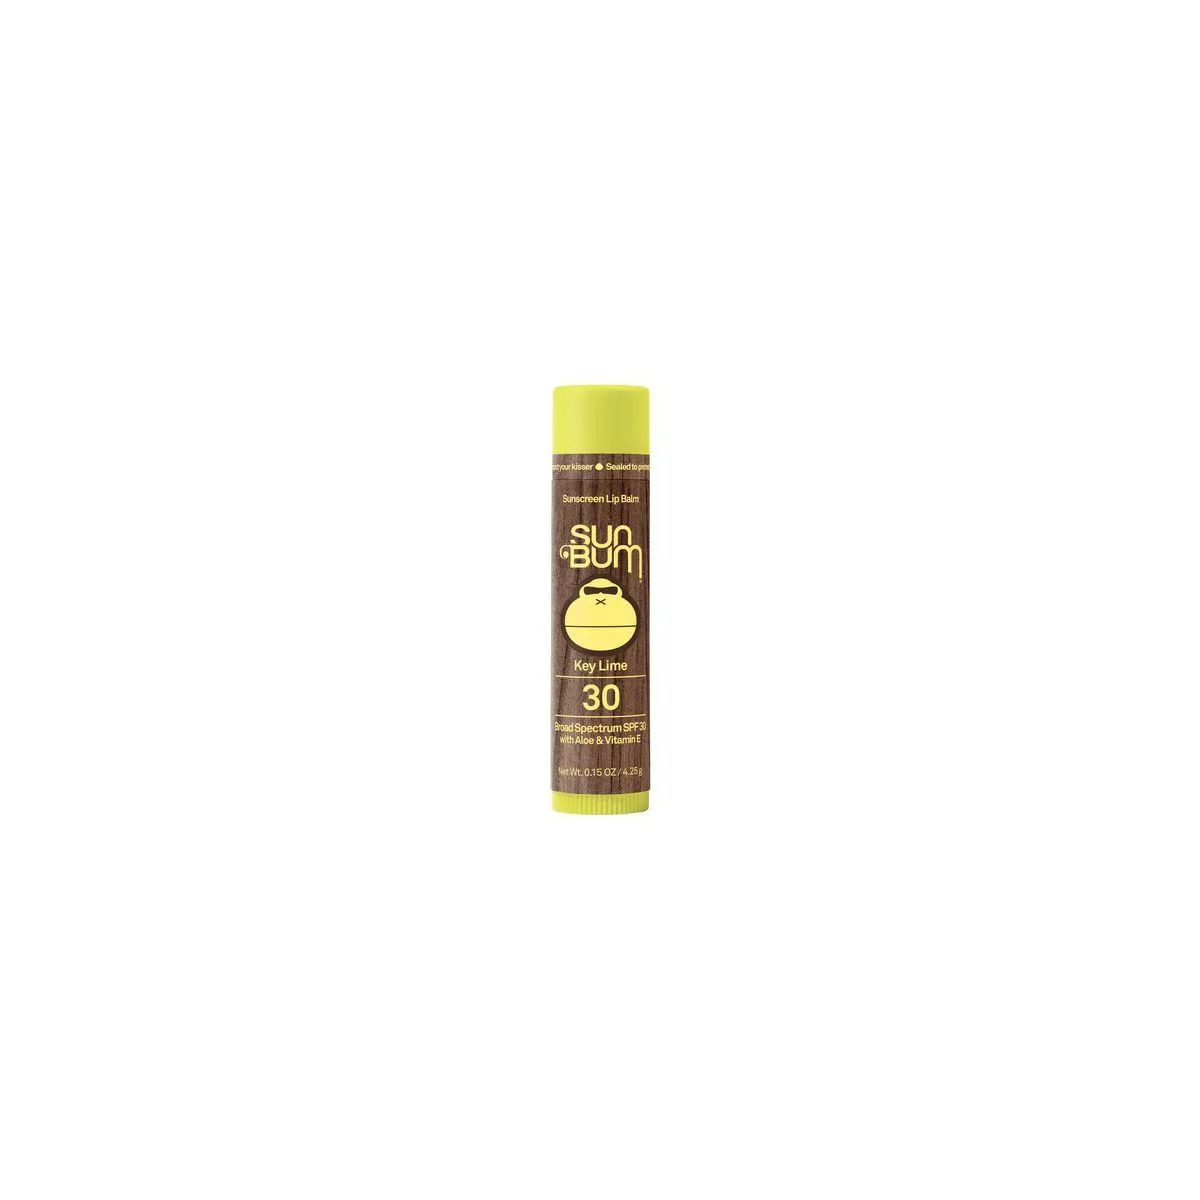 Sun Bum Key Lime Lip Balm - SPF 30 - 0.15oz | Target